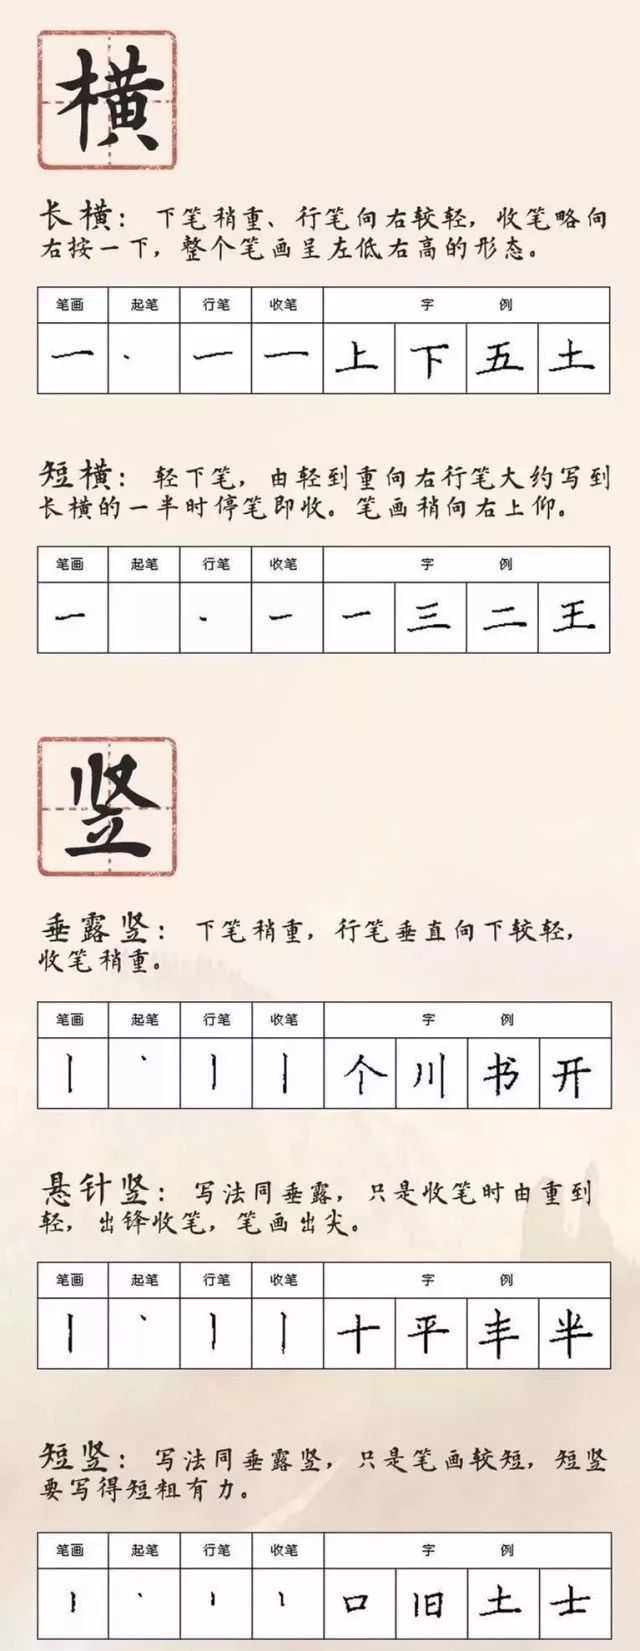 基本笔画学习 汉字的基本笔画包括横,竖,撇,捺,点,提,钩,折,经过